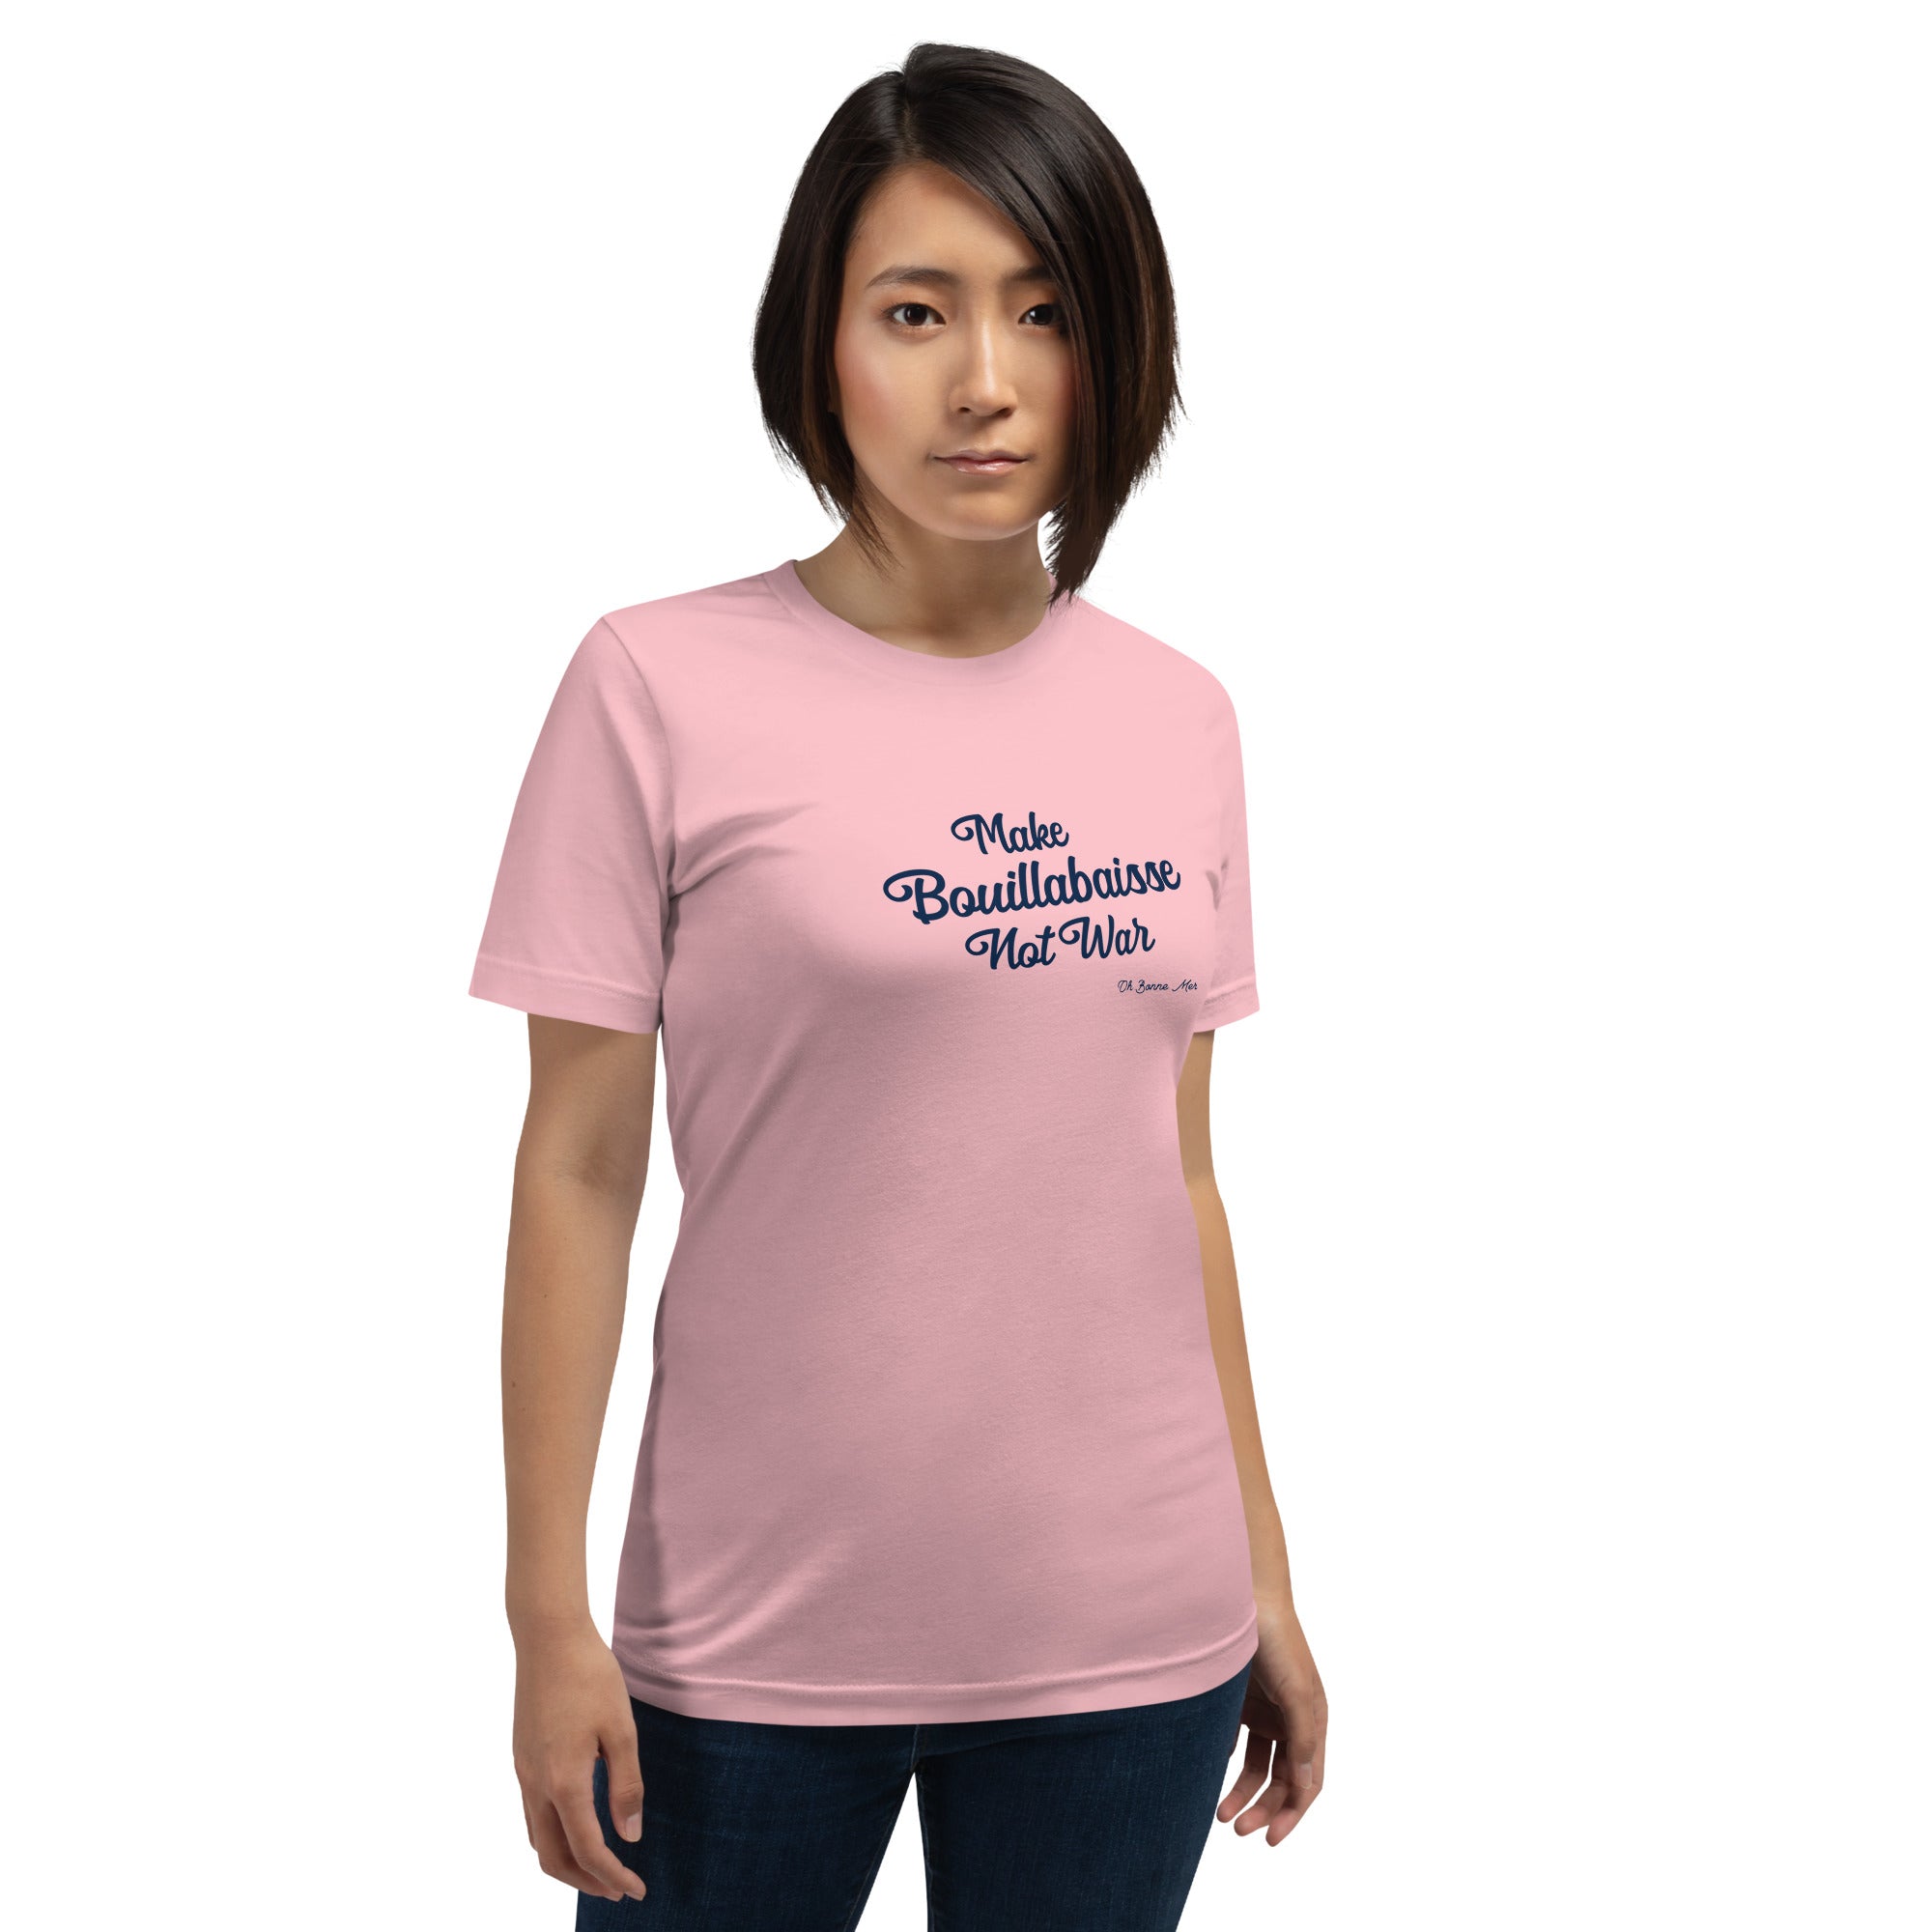 T-shirt en coton unisexe Make Bouillabaisse Not War Text Only sur couleurs claires